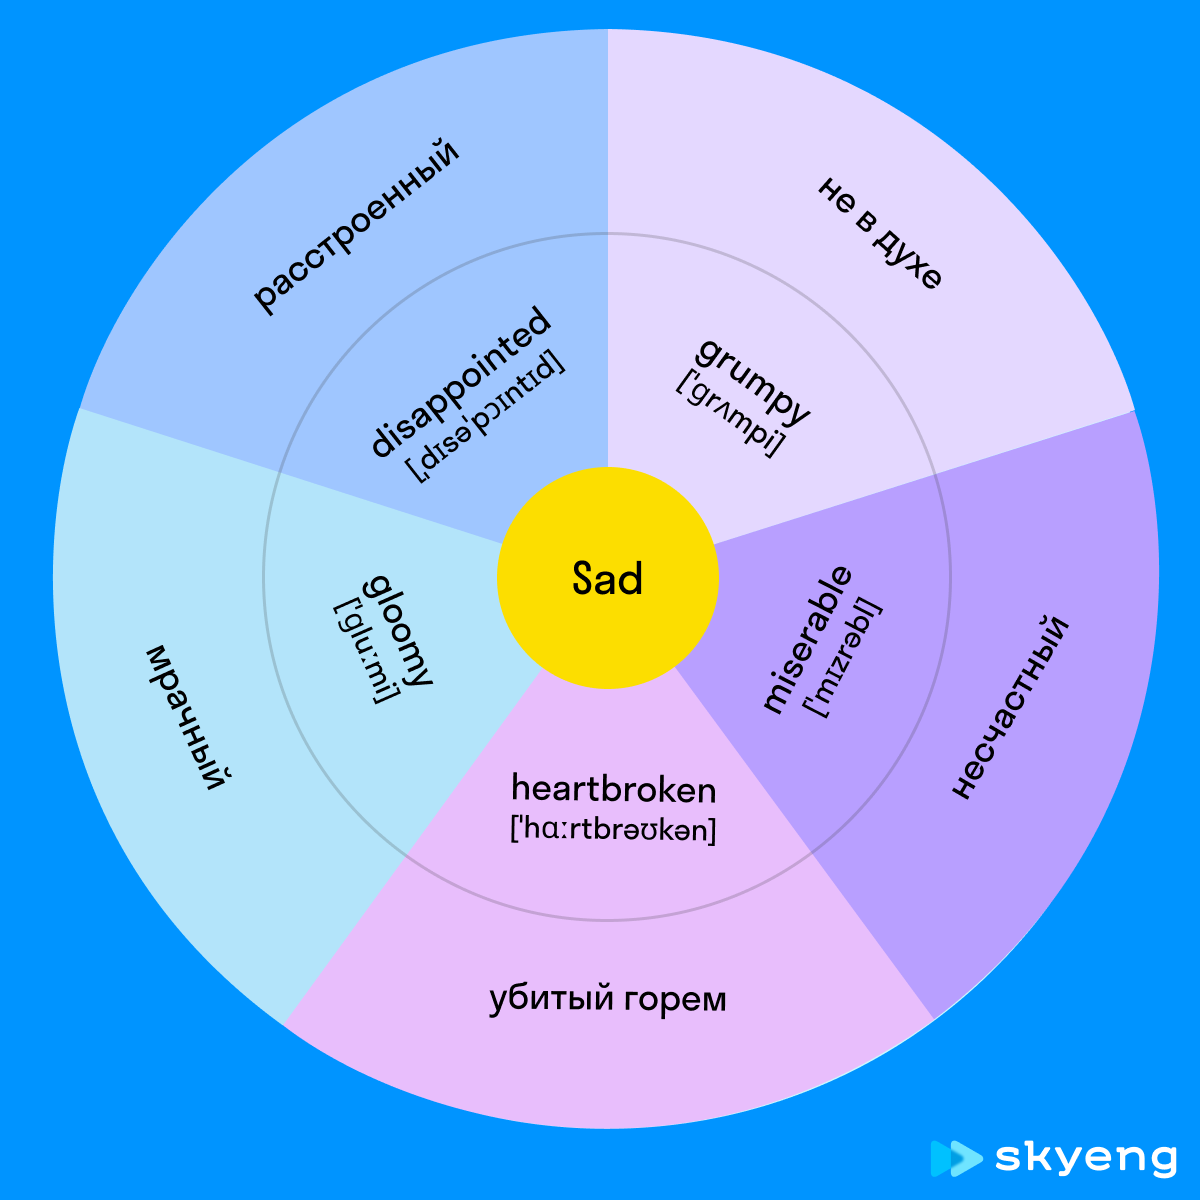 25 английских прилагательных, чтобы описать эмоции